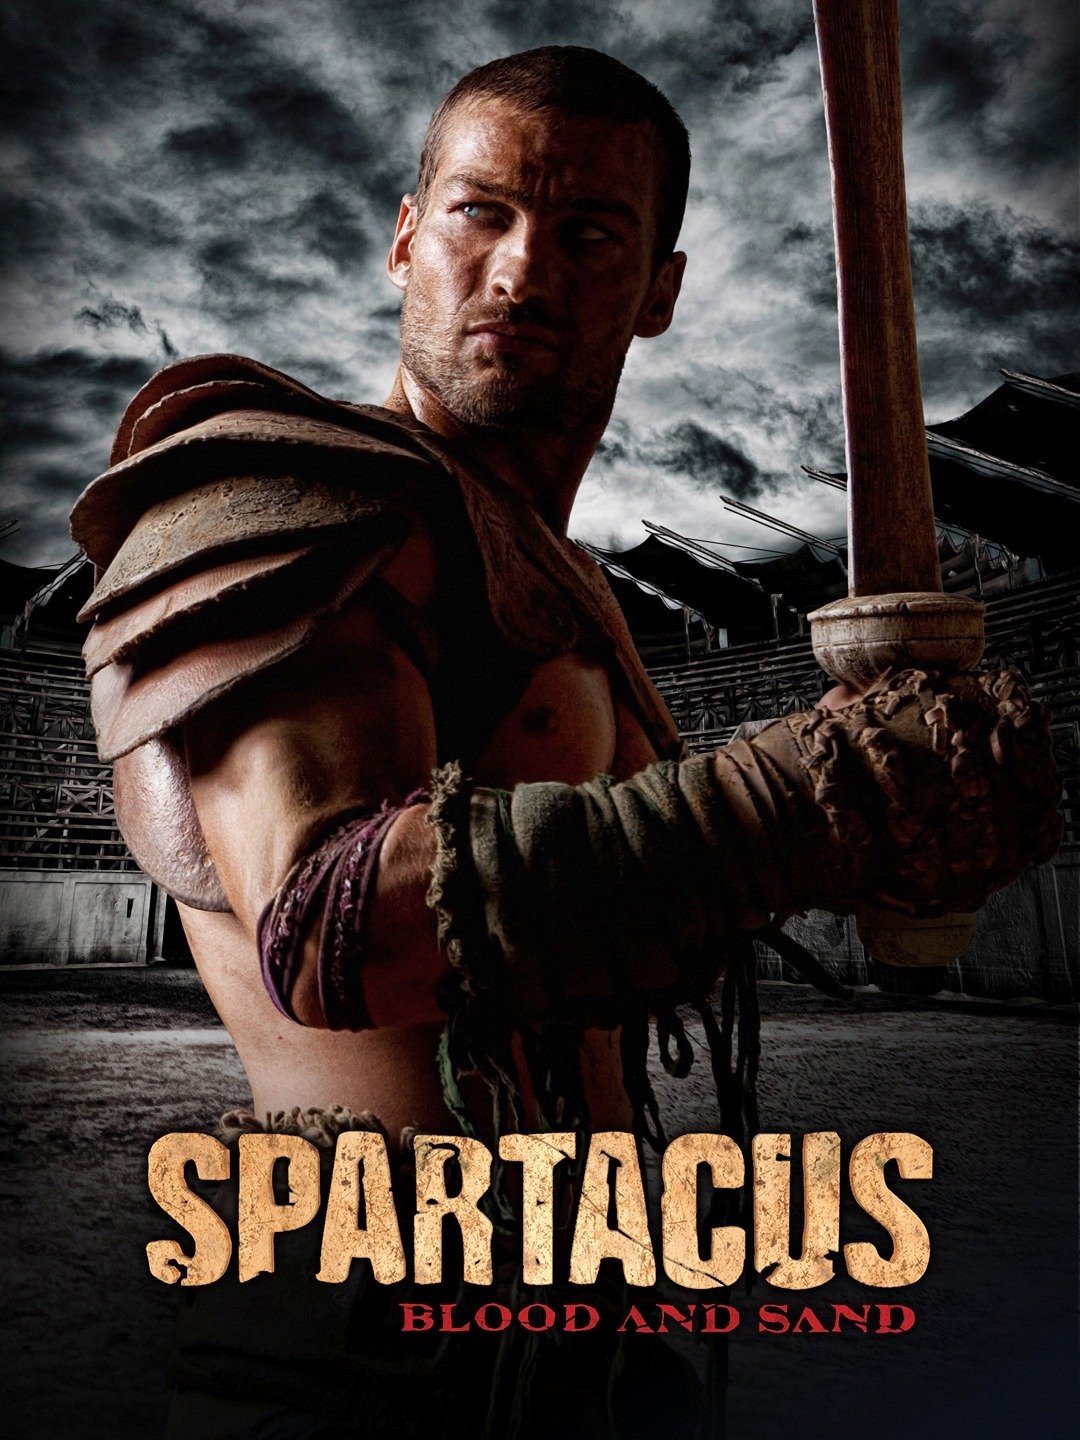 Best of Spartacus season 4 episodes